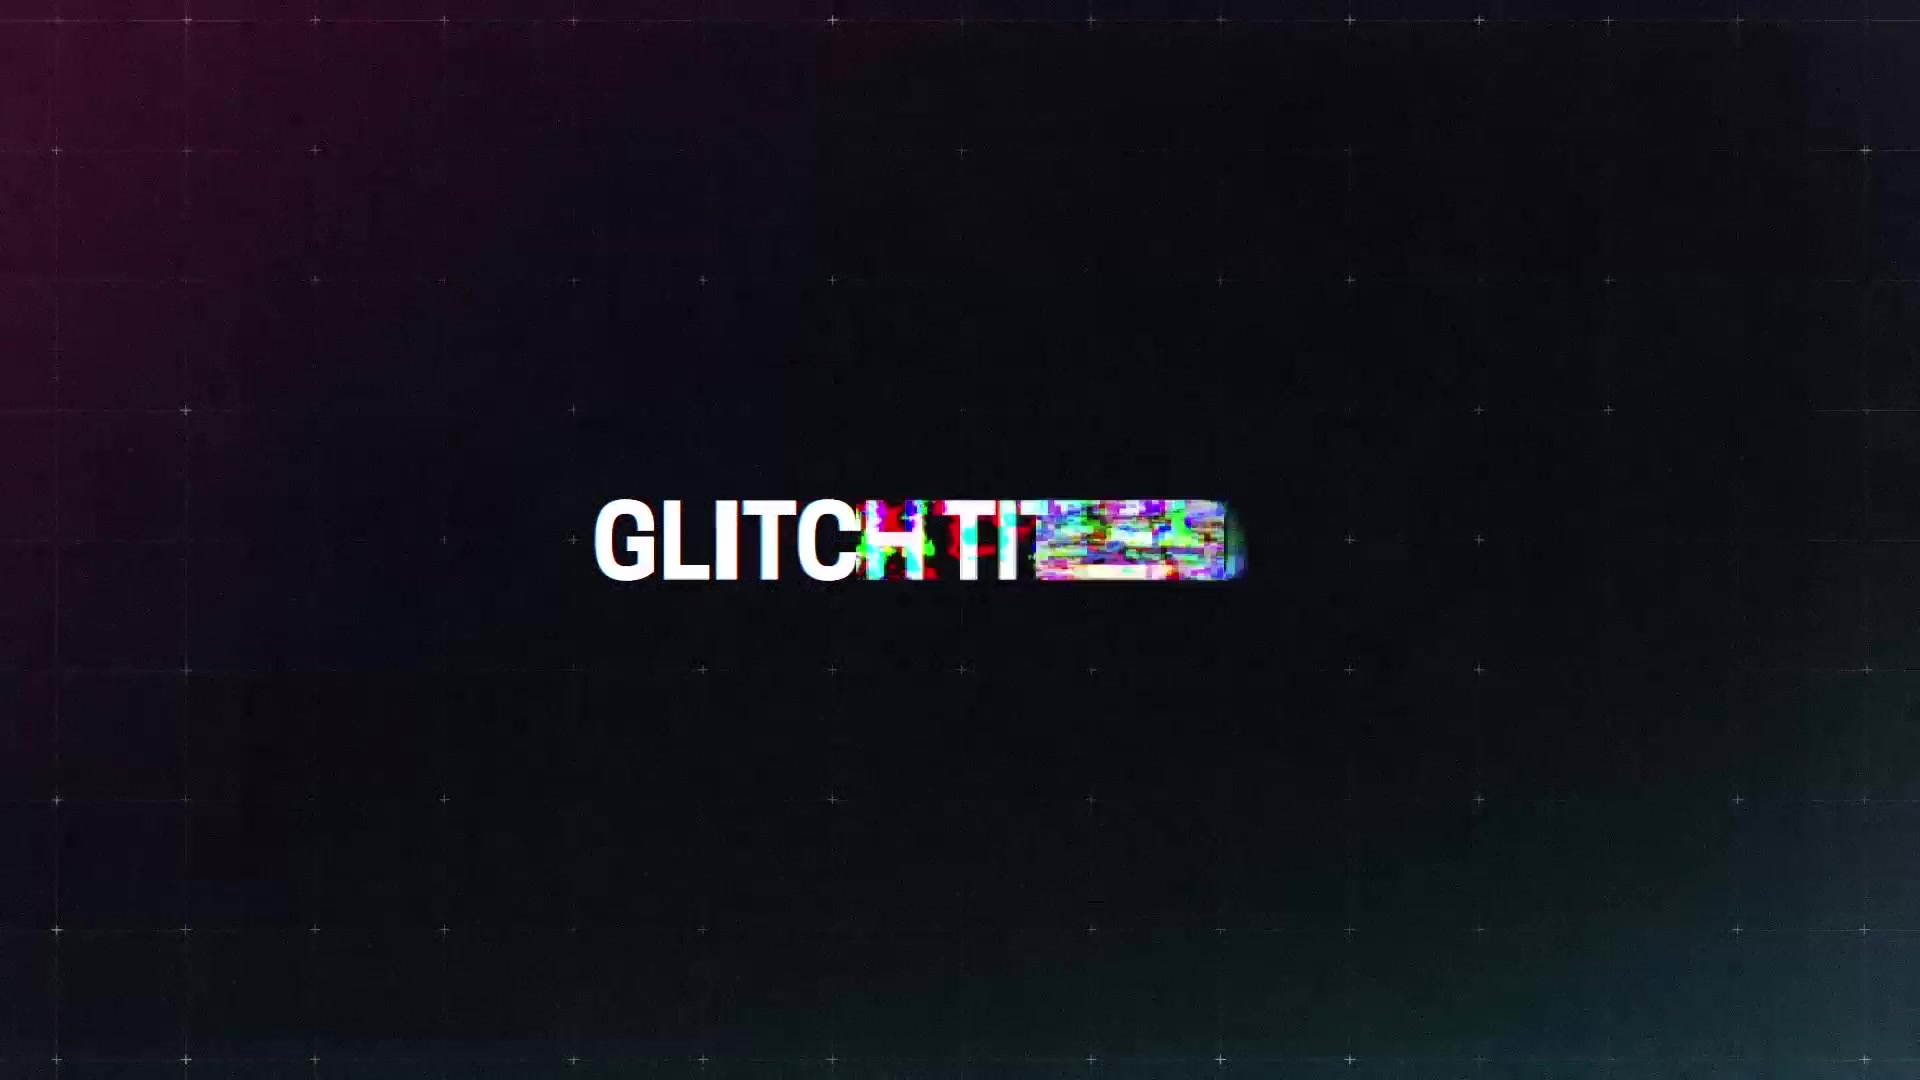 Glitch Titles Videohive 23383086 Premiere Pro Image 6